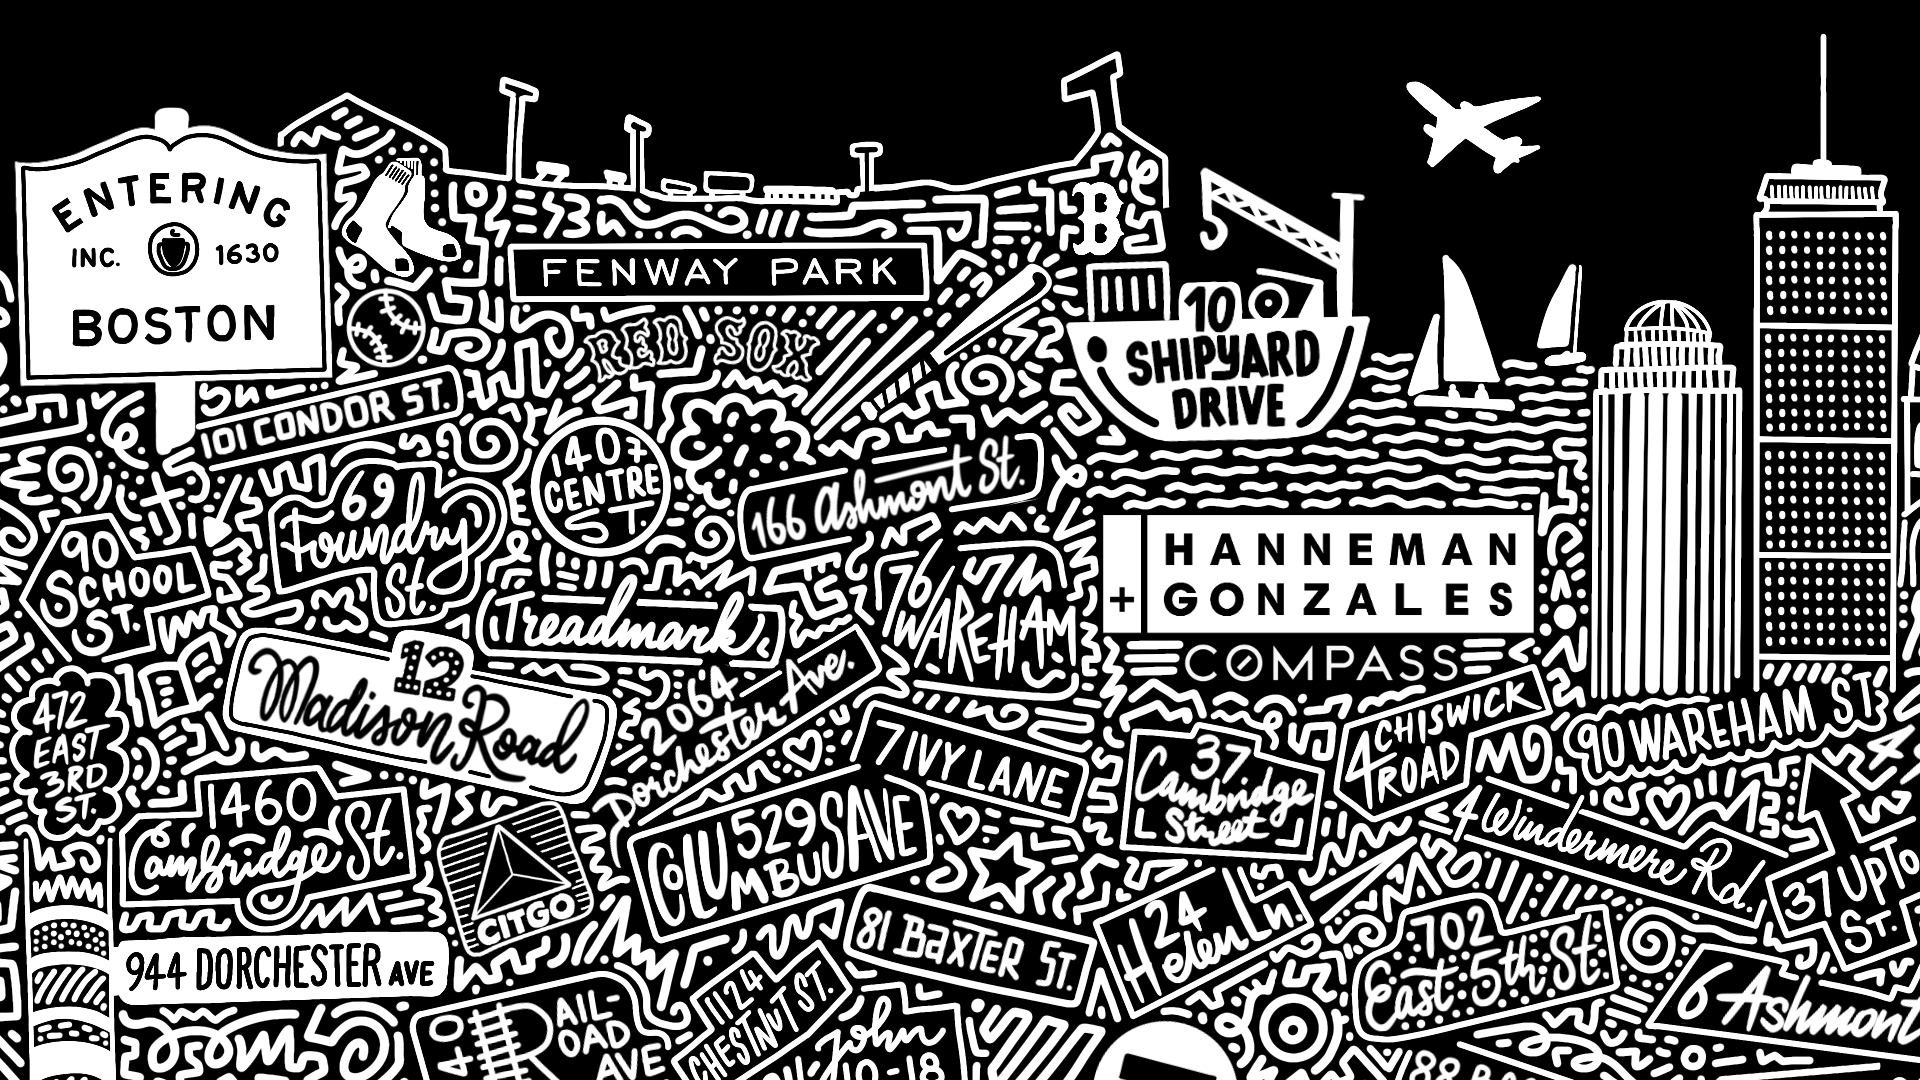 Hanneman + Gonzales Boston